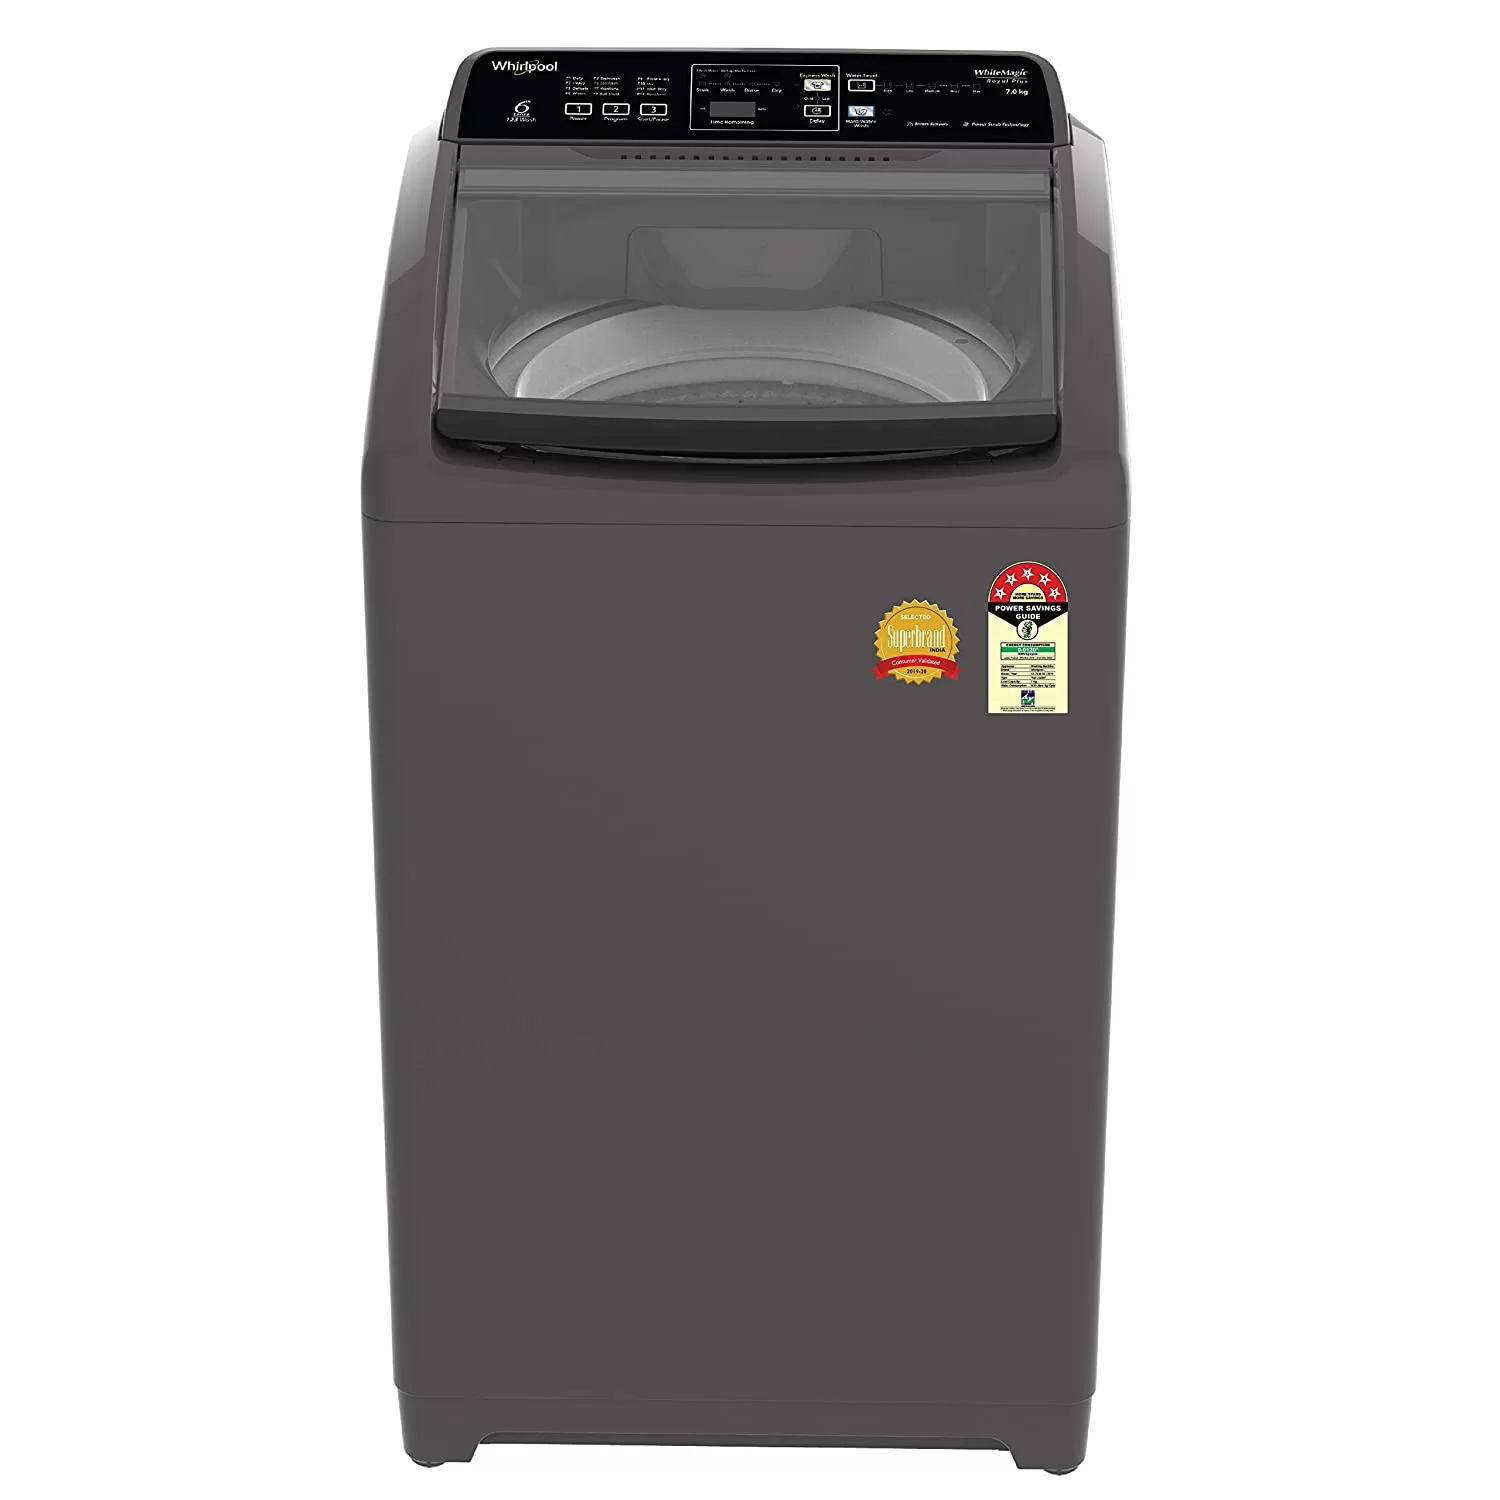 सबसे अच्छी वाशिंग मशीन कौन सी है?